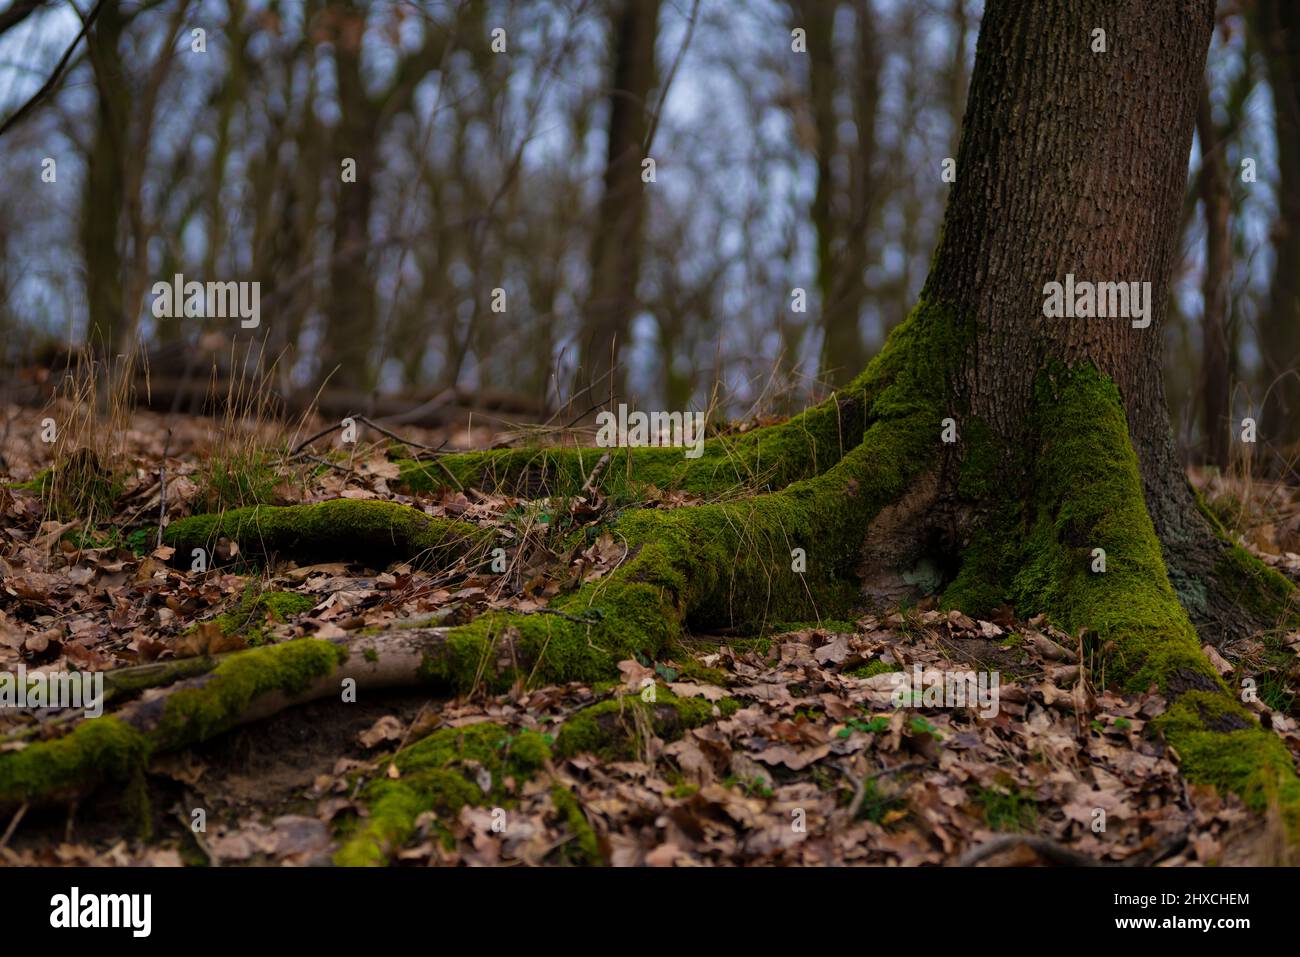 Laubwald im Winter, Baumwurzel mit Moos überwuchert, Schärfe im Vordergrund, geringe Schärfentiefe, Weiches Bokeh Stockfoto